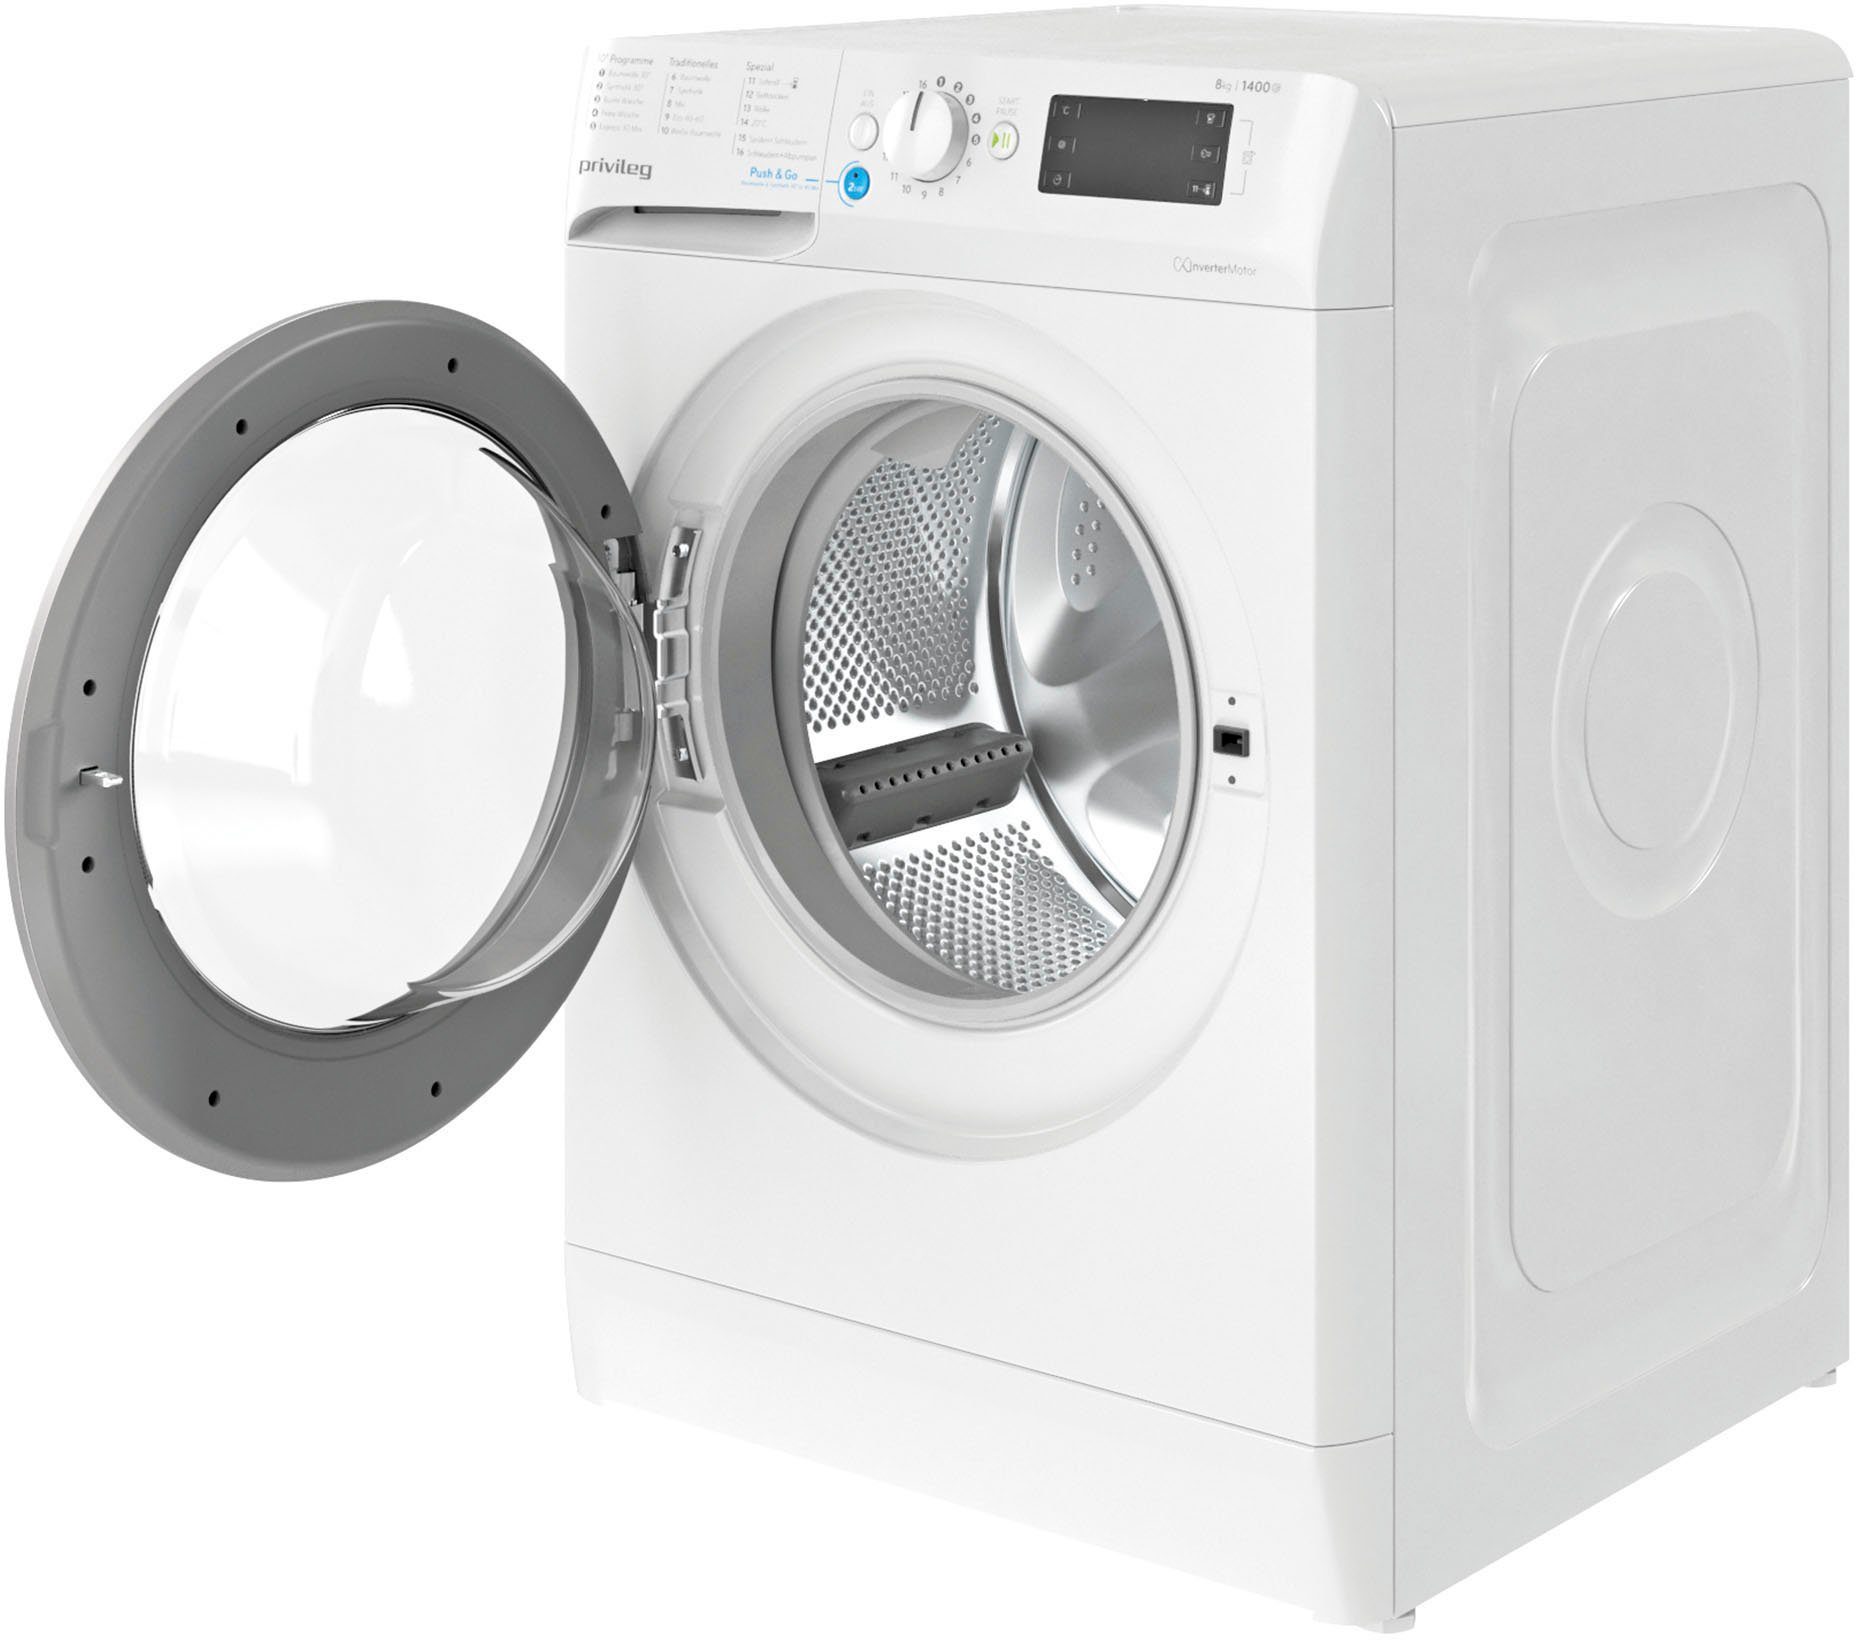 Privileg Waschmaschine PWF X 853 A, kg, 8 U/min 1400